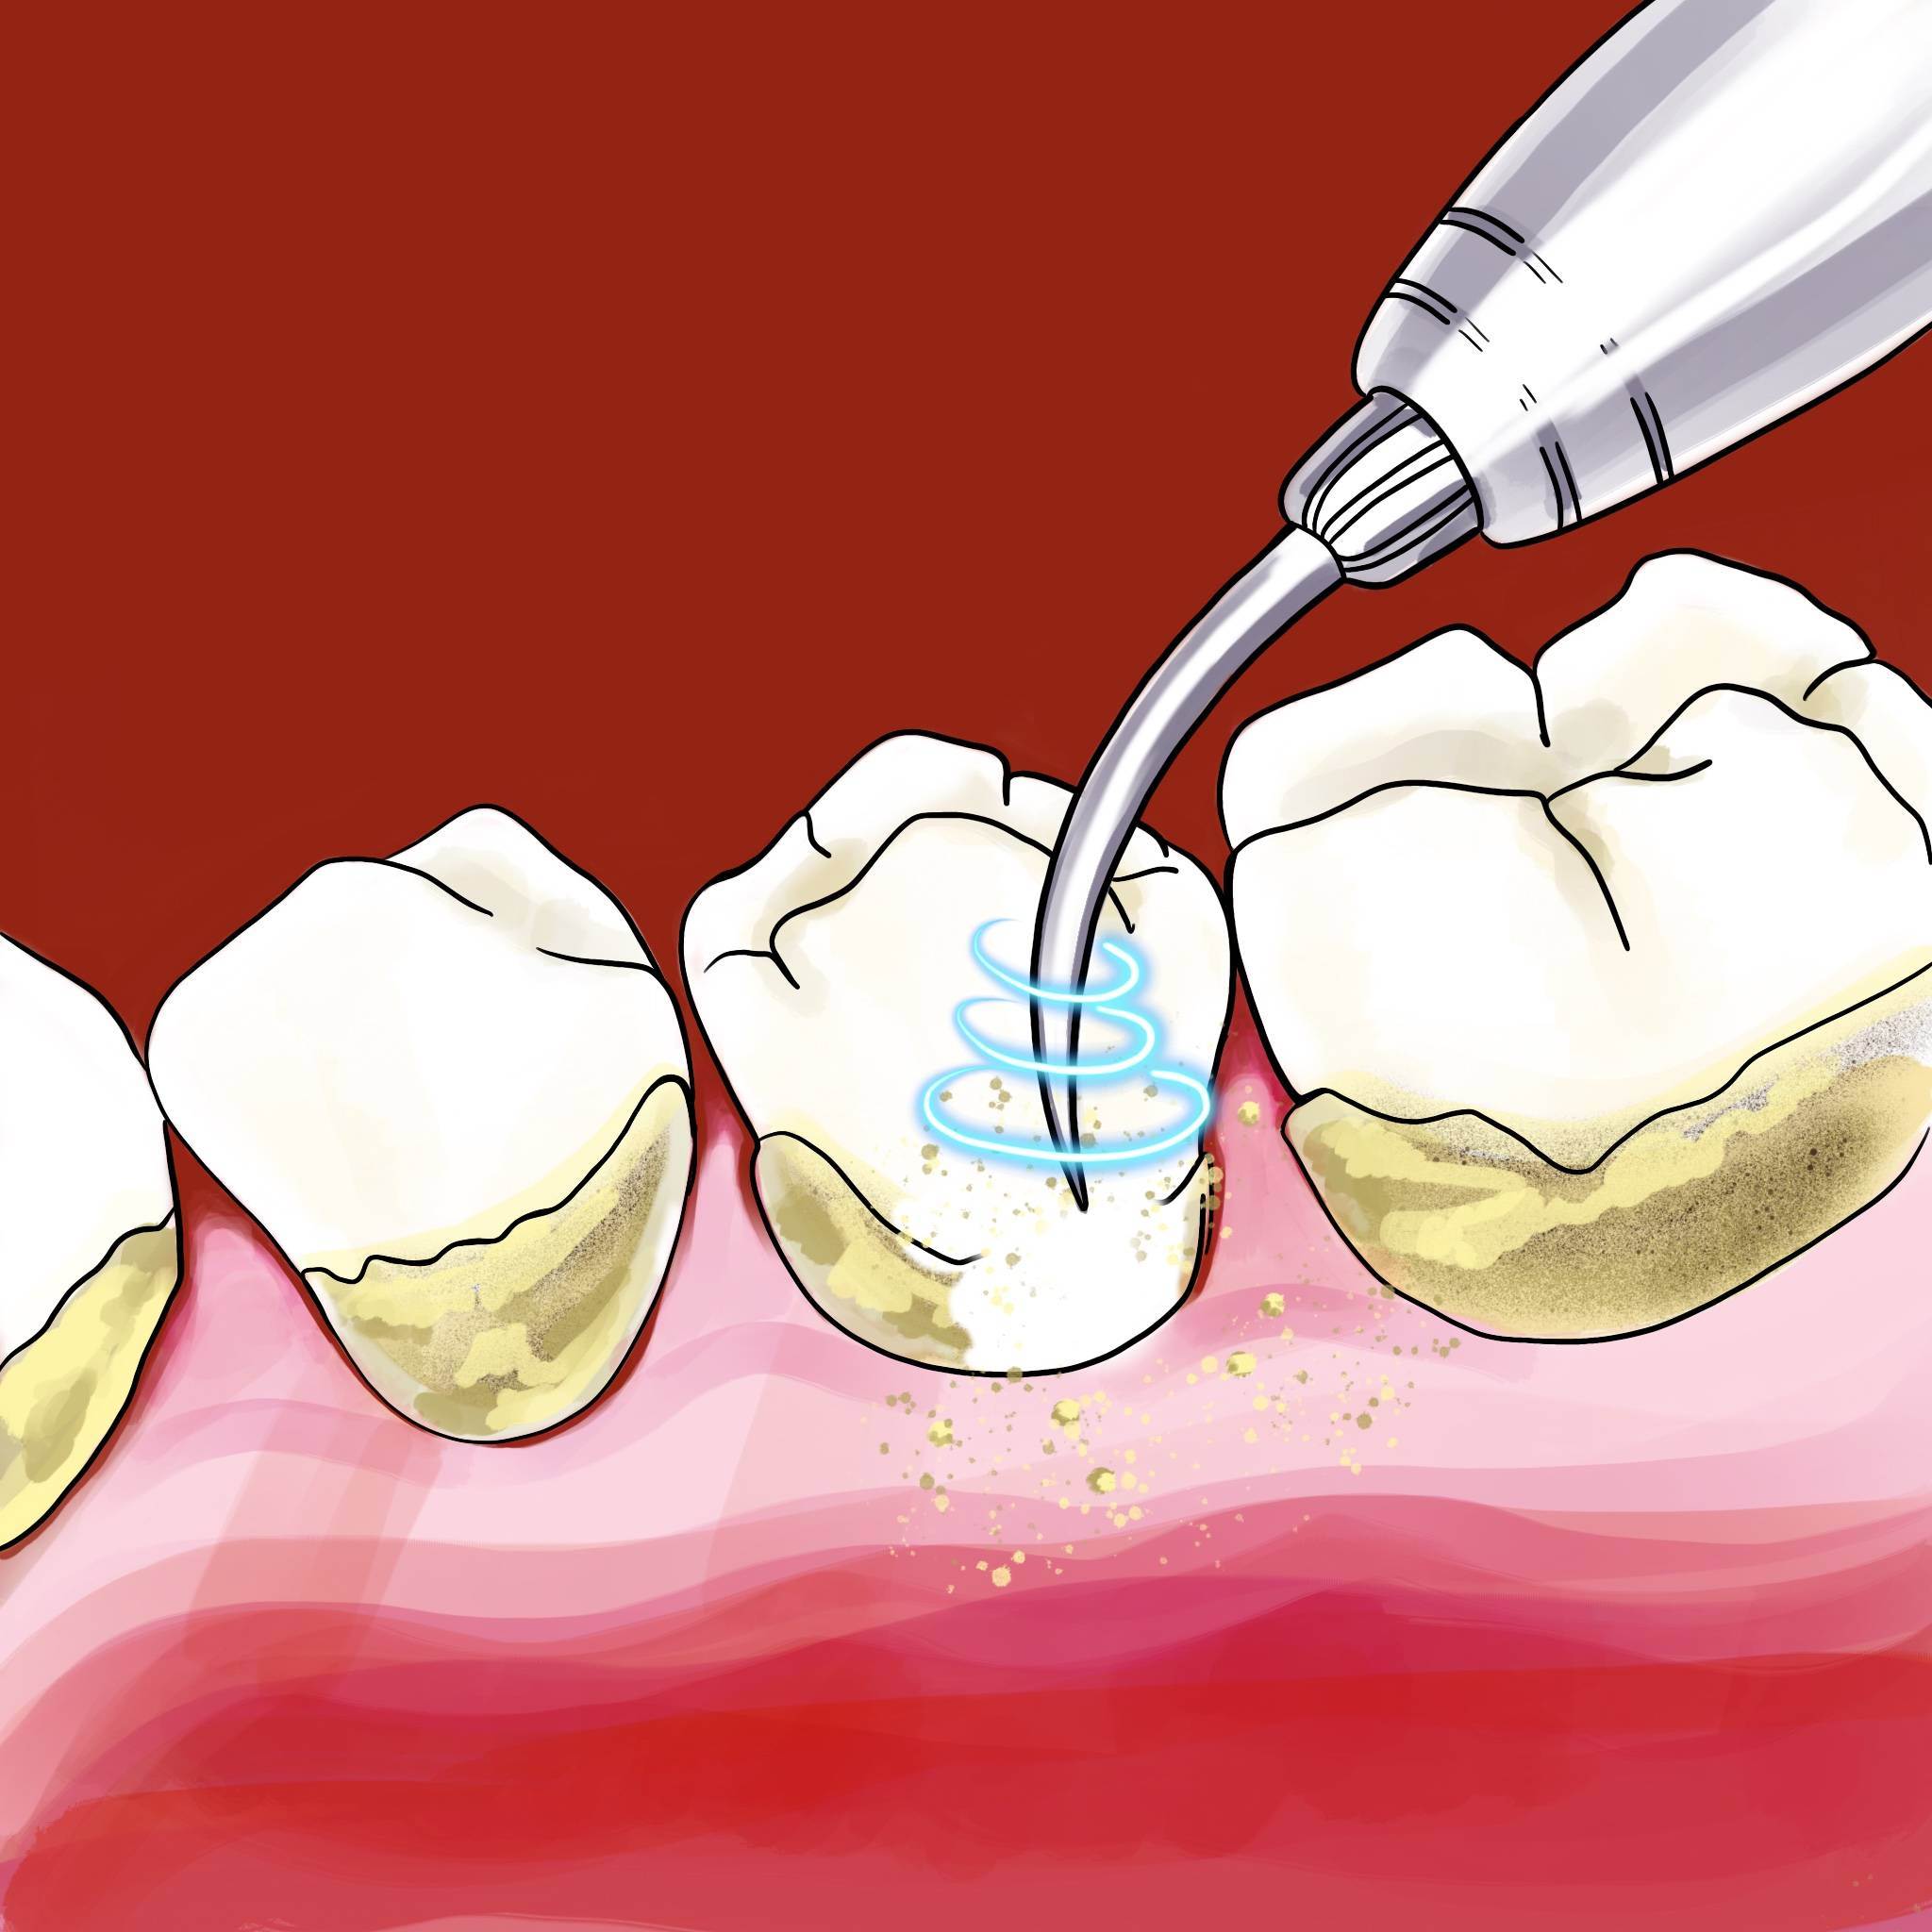 Как делается ультразвуковая чистка зубов, и сколько она стоит